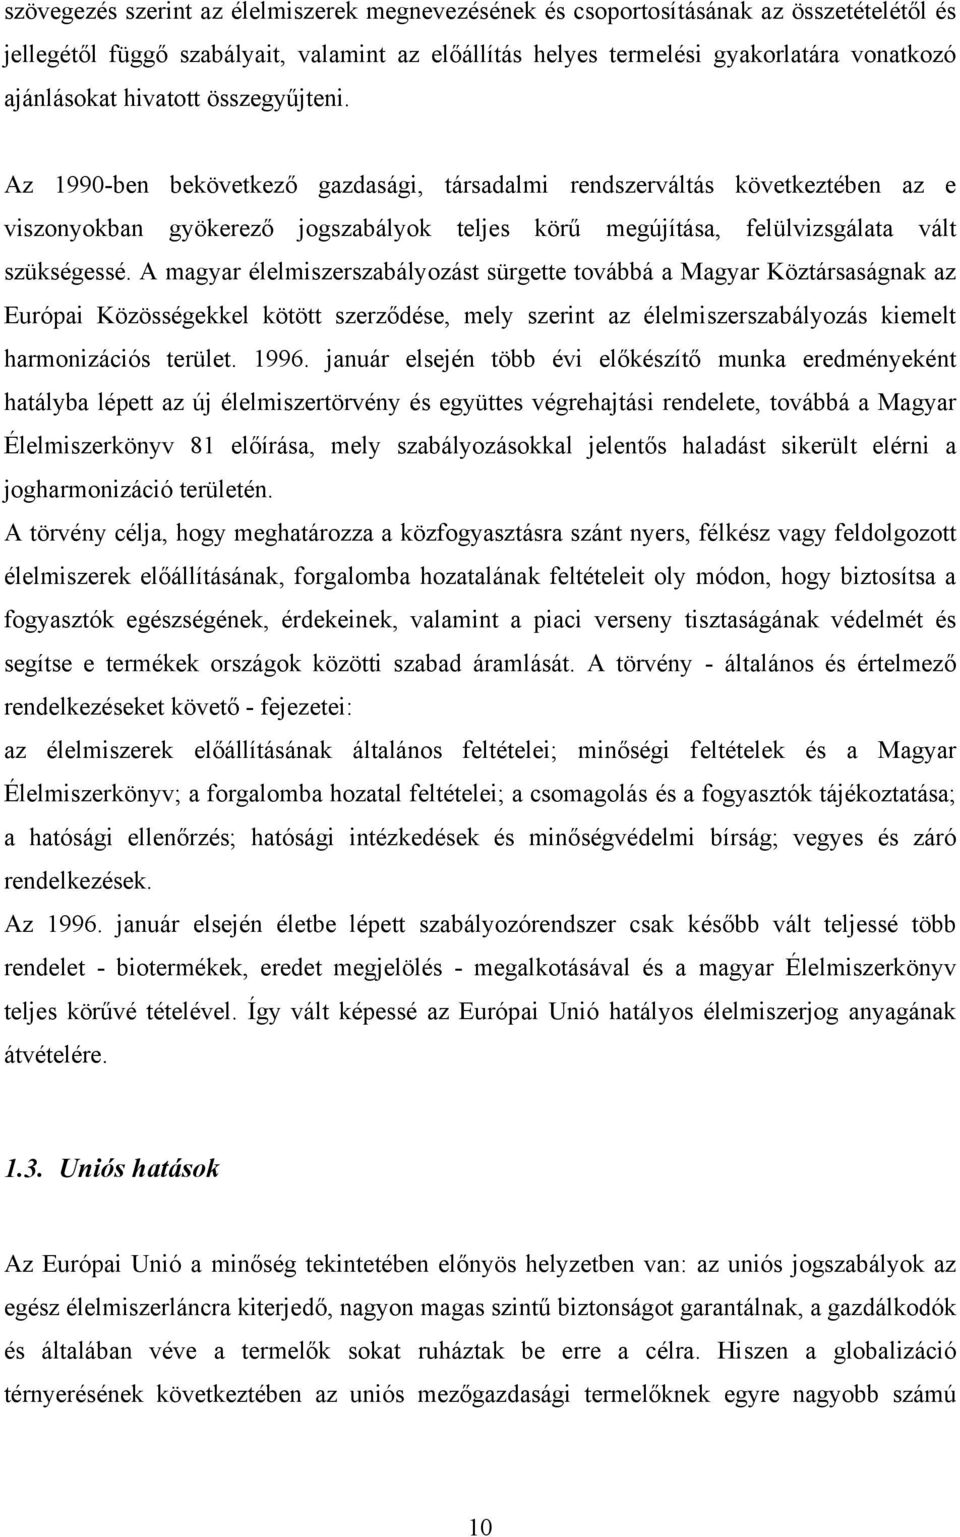 A magyar élelmiszerszabályozást sürgette továbbá a Magyar Köztársaságnak az Európai Közösségekkel kötött szerződése, mely szerint az élelmiszerszabályozás kiemelt harmonizációs terület. 1996.